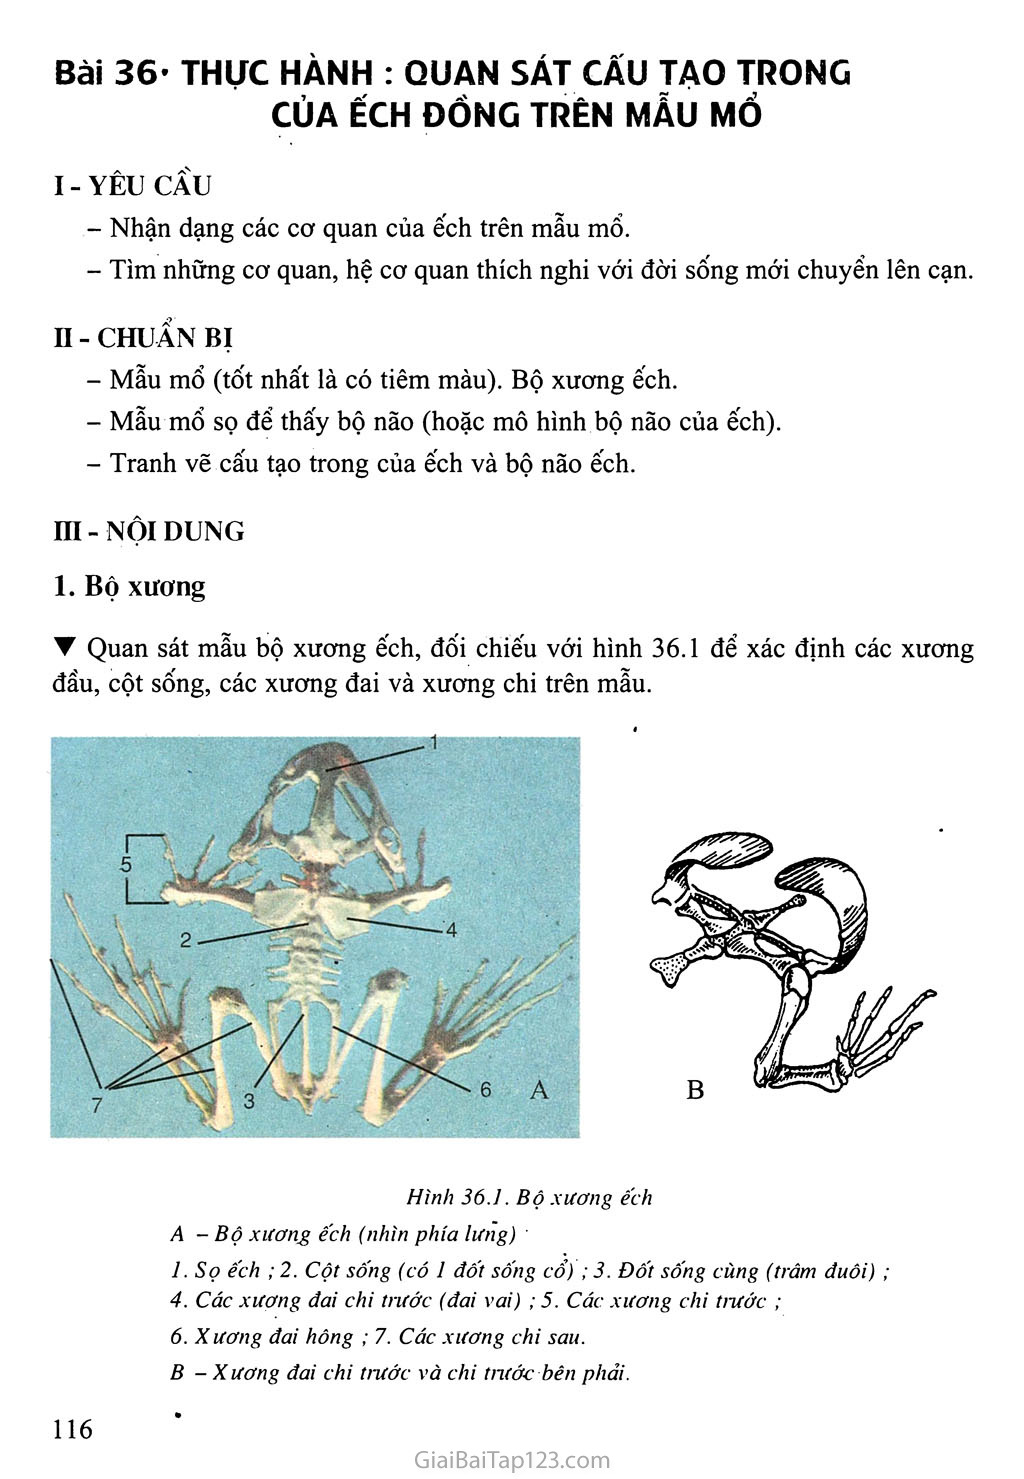 Bài 36: Thực hành: Quan sát cấu tạo trong của ếch đồng trên mẫu mổ trang 1